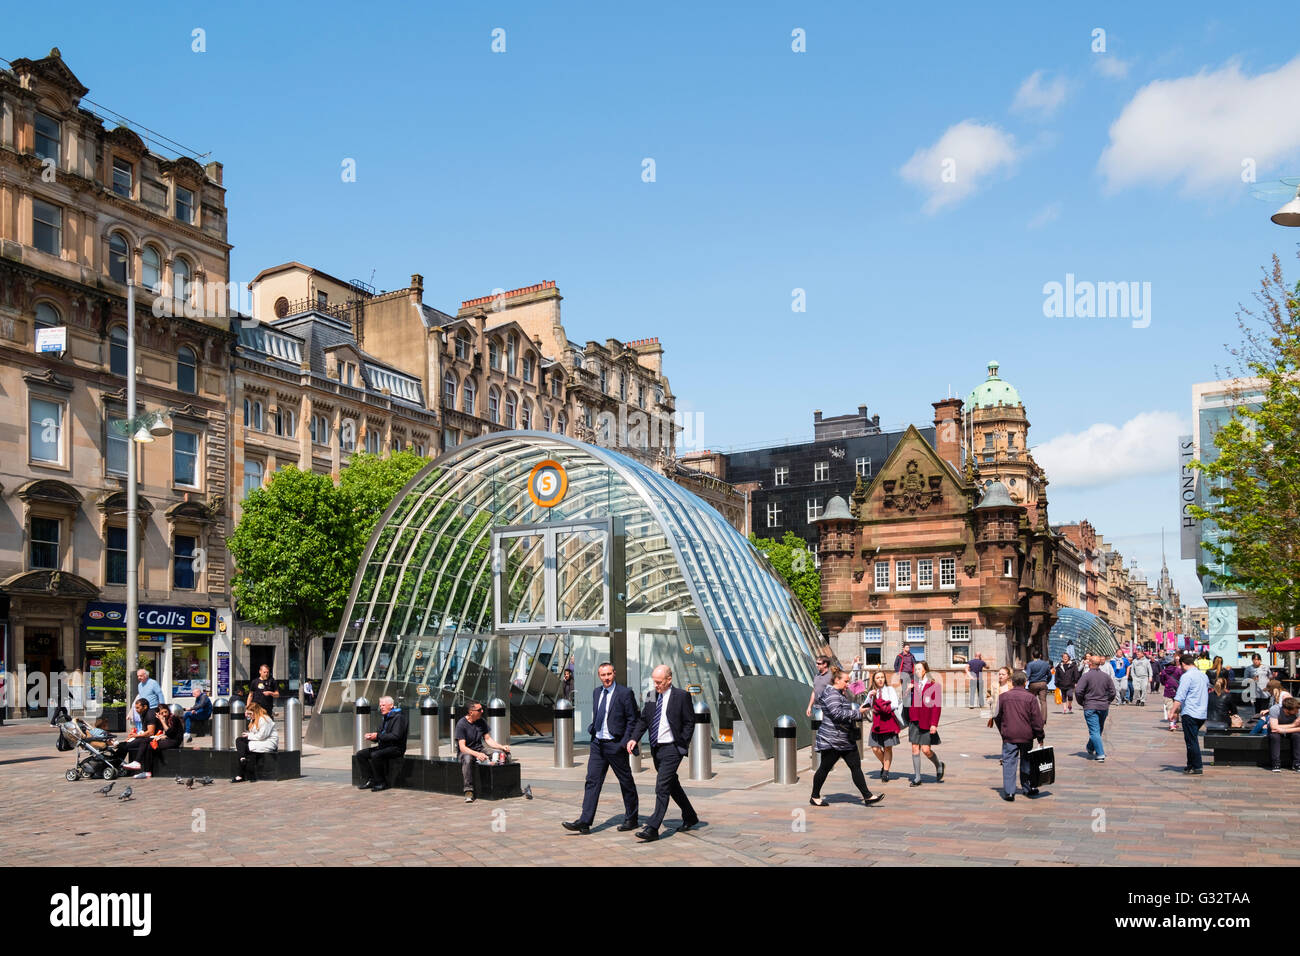 Vue de l'entrée de la station de métro St Enoch Square à Glasgow, Ecosse, Royaume-Uni Banque D'Images